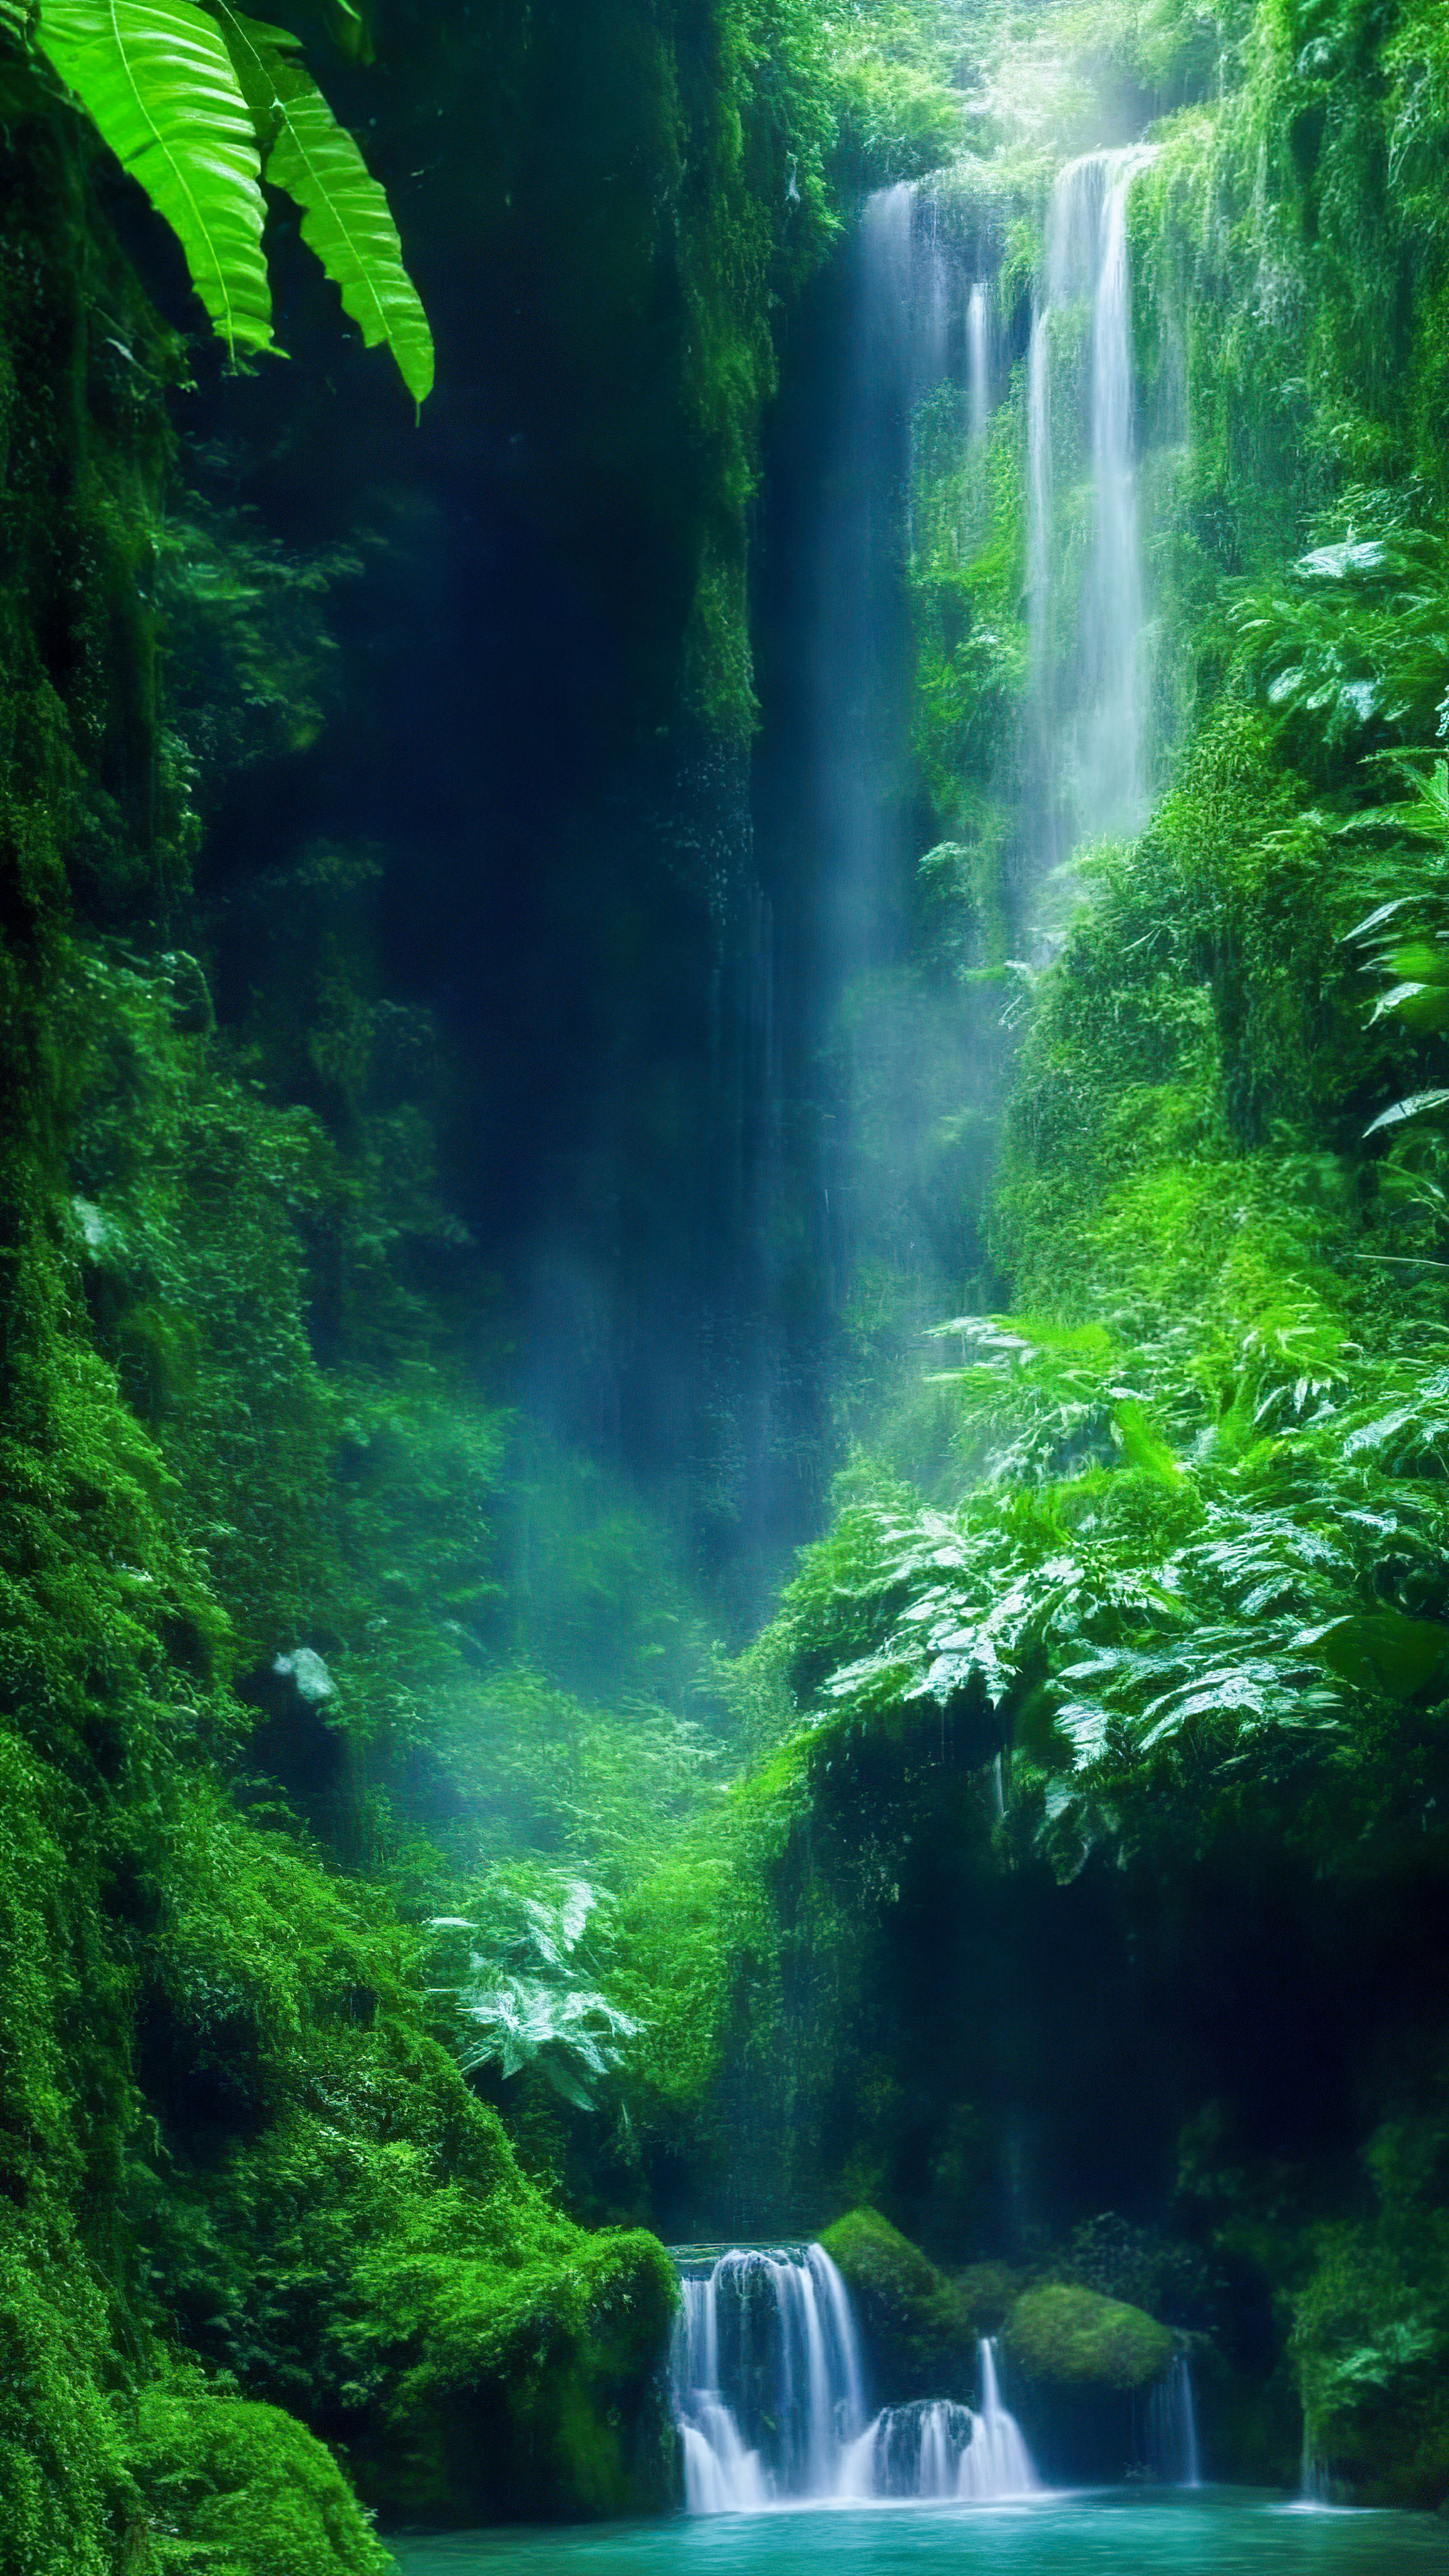 Perdez-vous dans la magie de notre arrière-plan de paysage esthétique mignon, présentant une cascade mystique enchantée cachée profondément dans la forêt tropicale verdoyante.